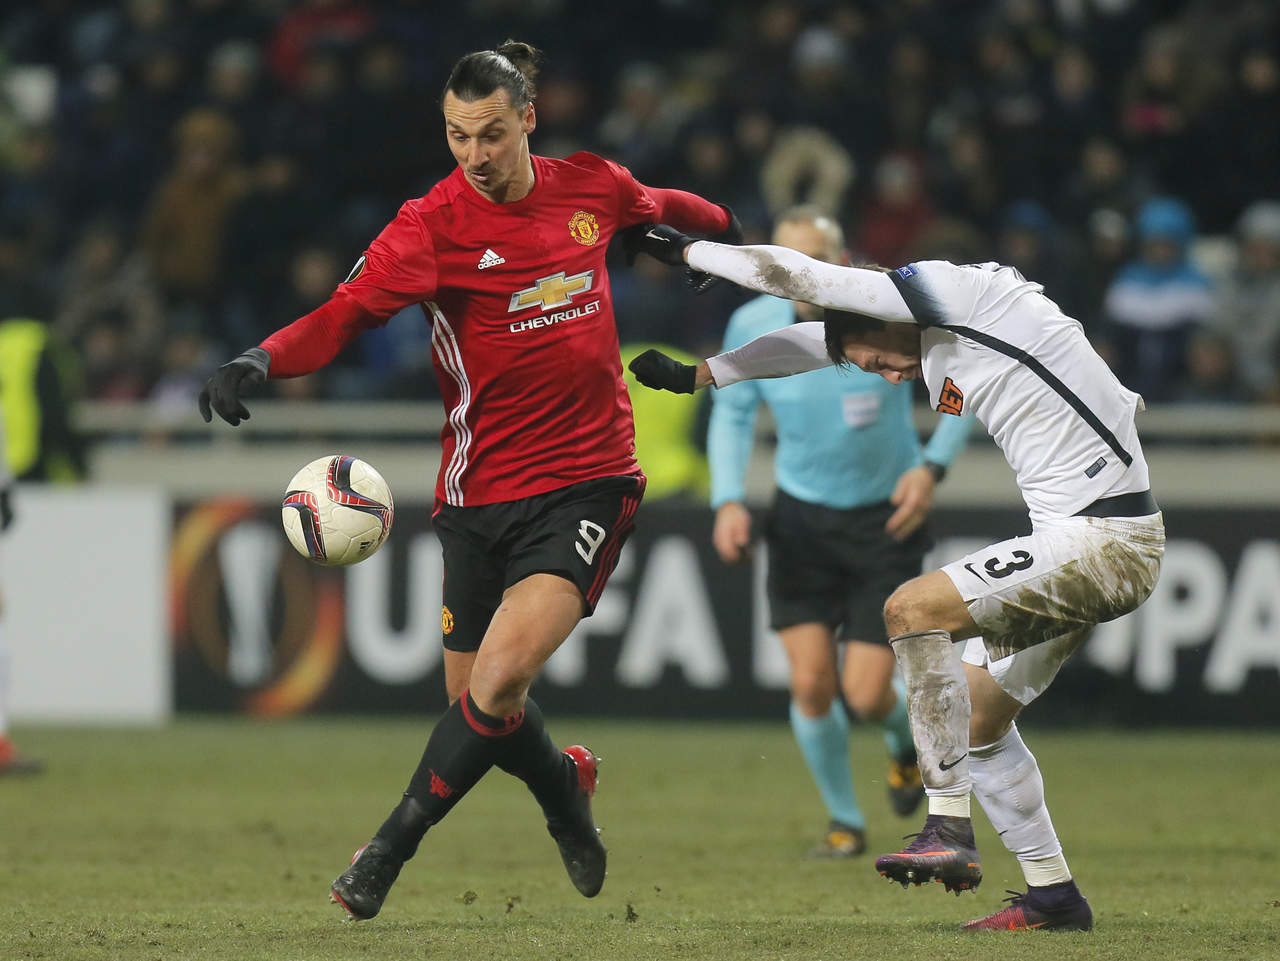 
De la mano de Zlatan, Manchester United no ha visto la derrota en los últimos 15 partidos disputados en todas las competencias y ha ganado sus últimos nueve partidos de manera consecutiva. 